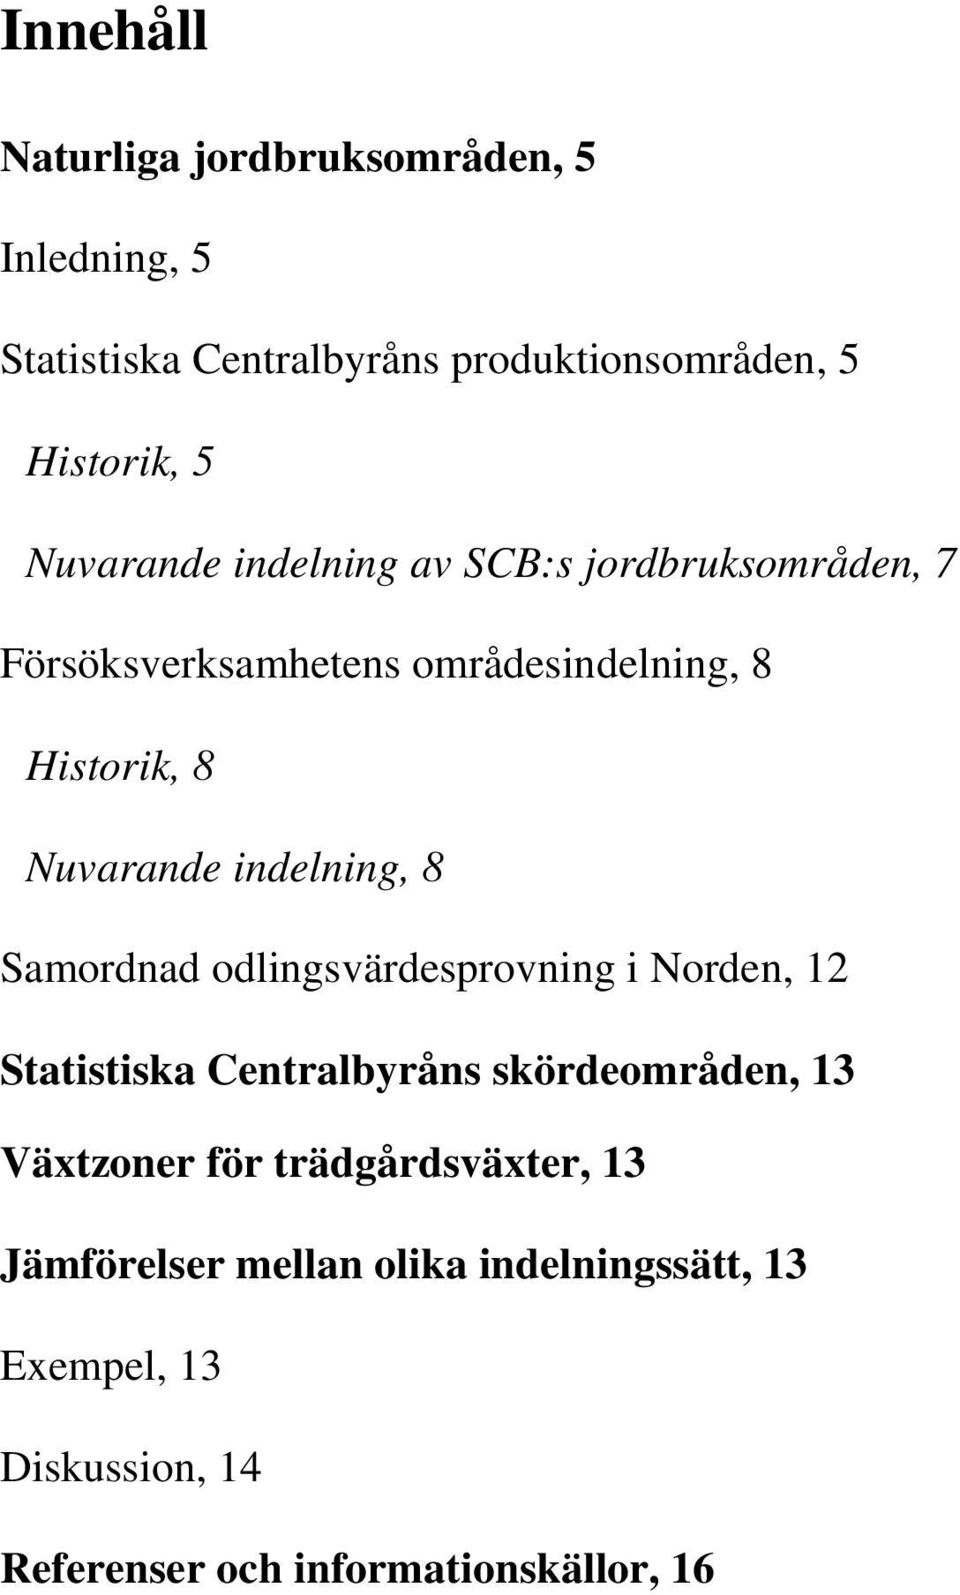 indelning, 8 Samordnad odlingsvärdesprovning i Norden, 12 Statistiska Centralbyråns skördeområden, 13 Växtzoner för